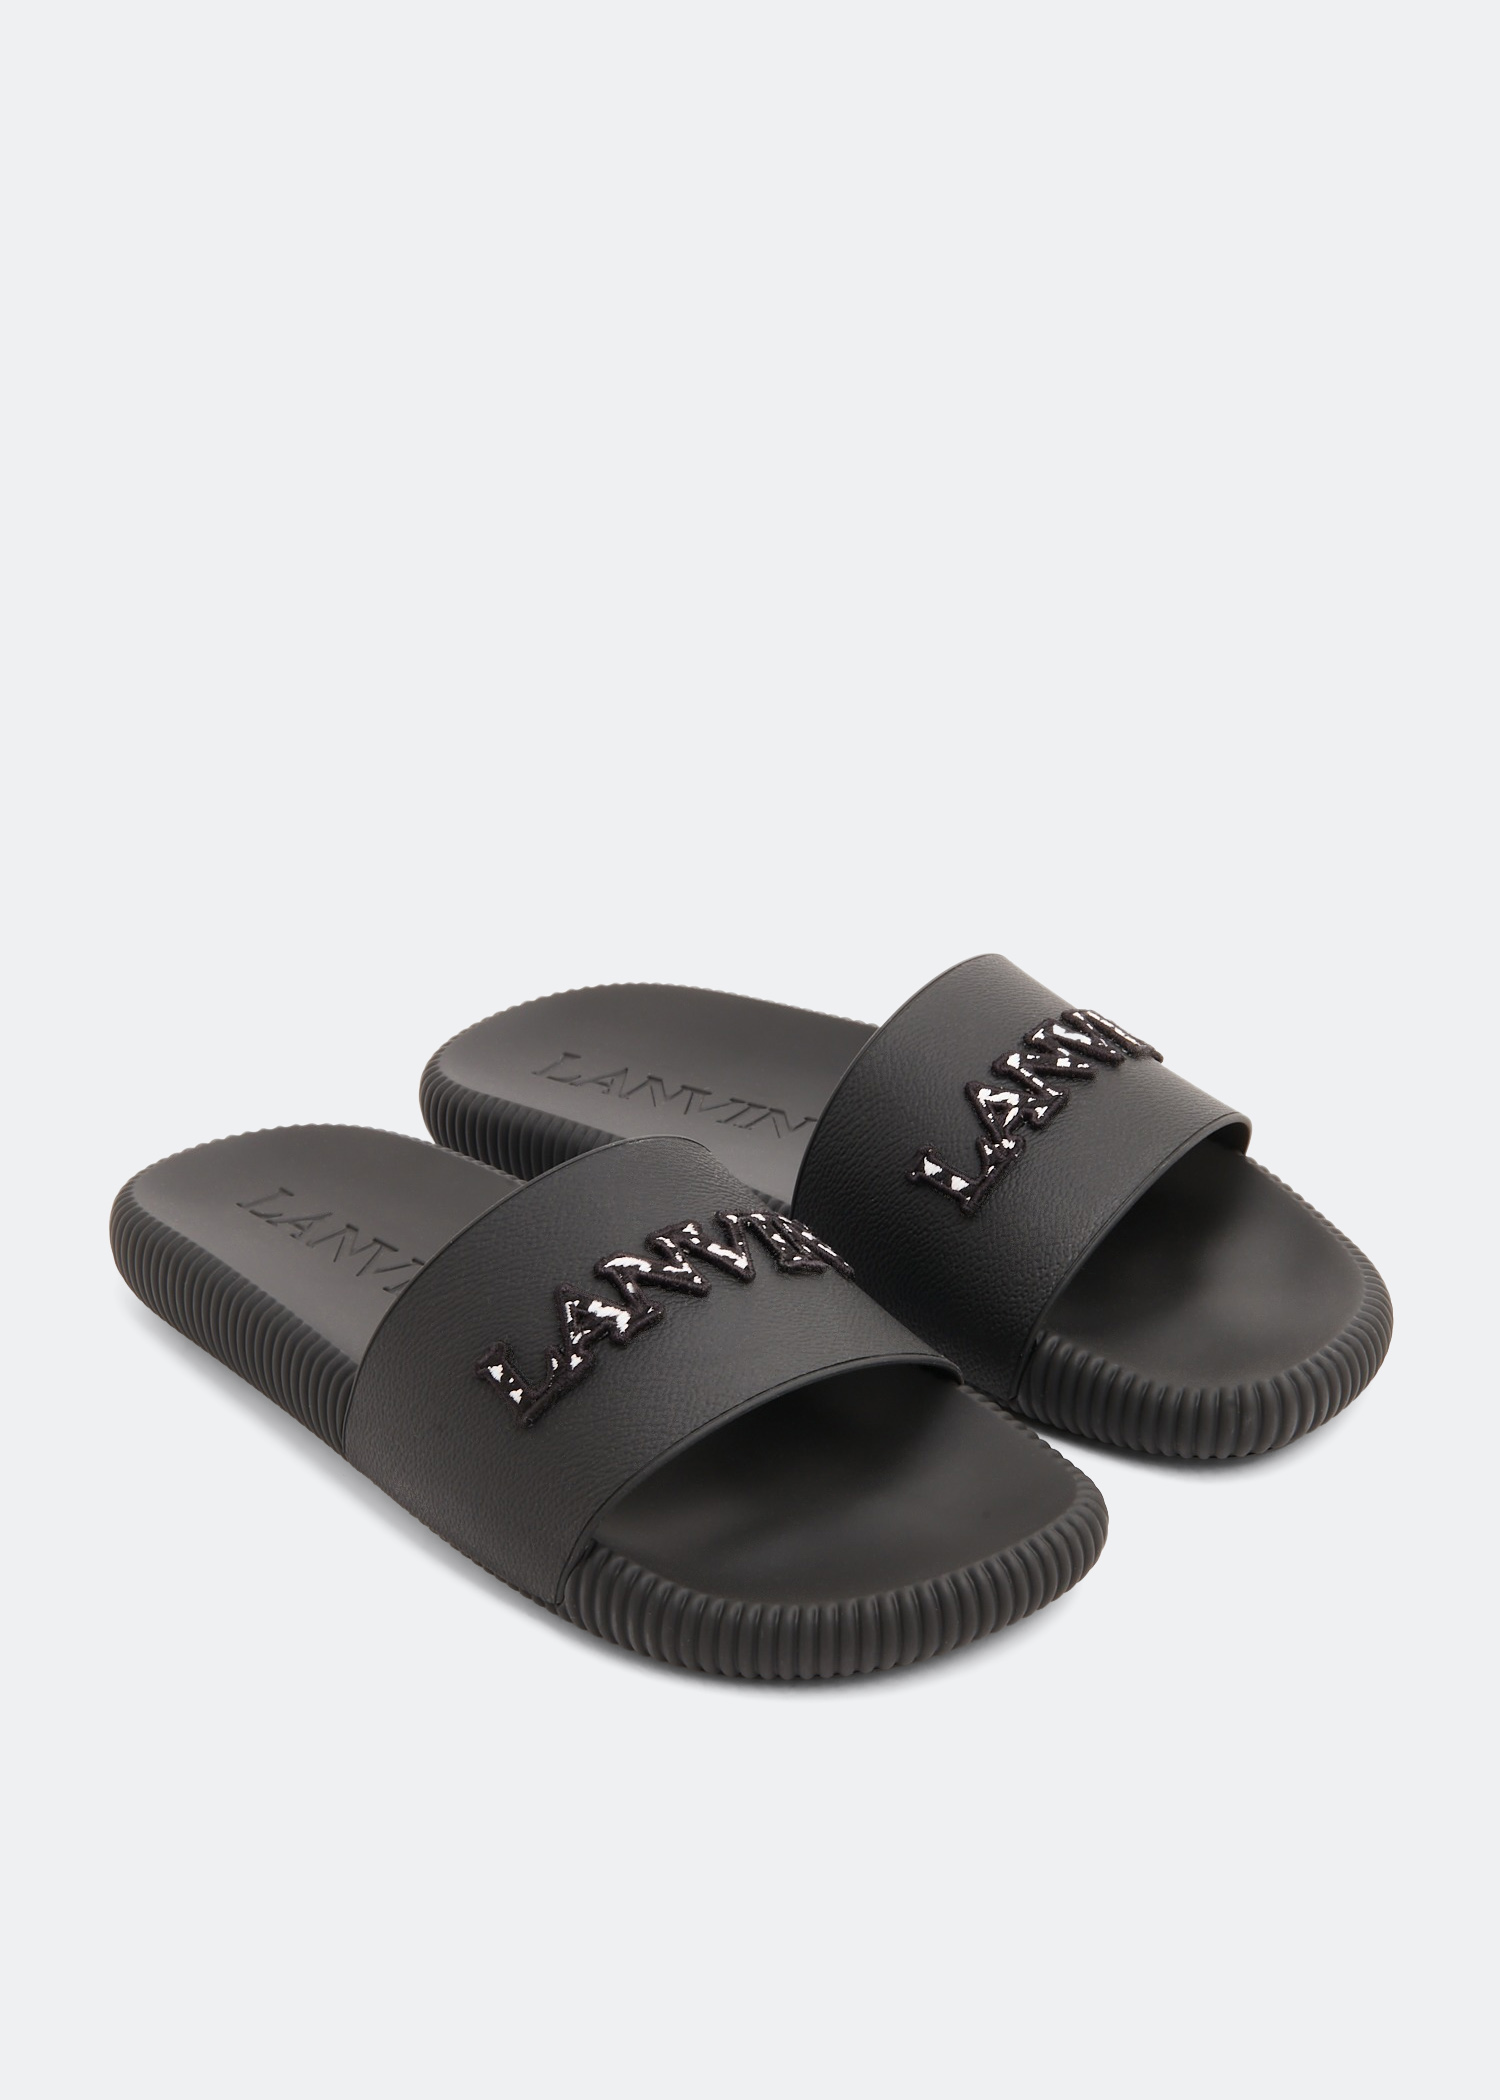 Lanvin Arpège slides for Men - Black in KSA | Level Shoes